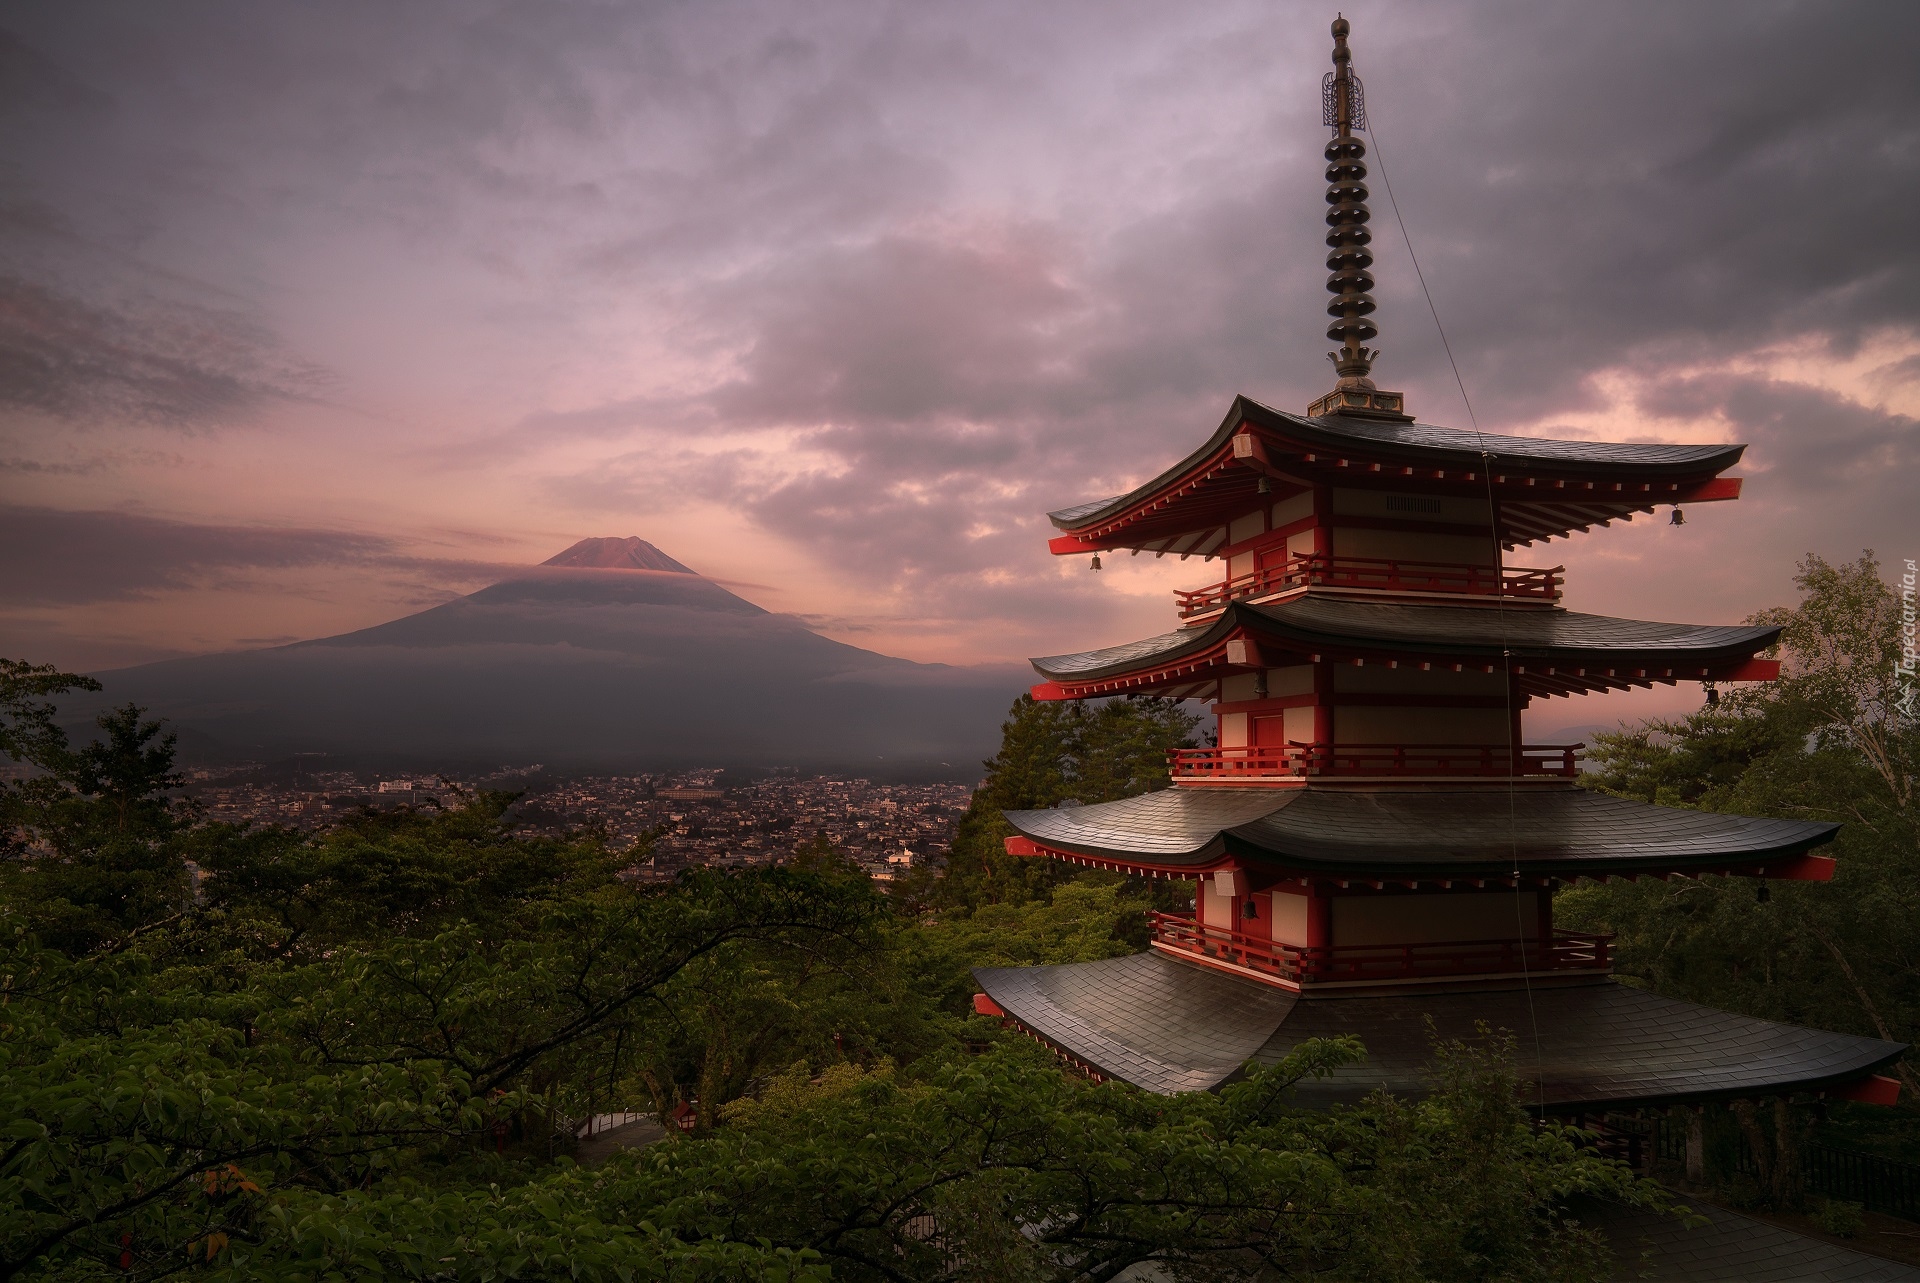 Świątynia Chureito Pagoda, Góra Fudżi, Stratowulkan, Drzewa, Zachód słońca, Miasto Fujiyoshida, Prefektura Yamanashi, Wyspa Honsiu, Japonia